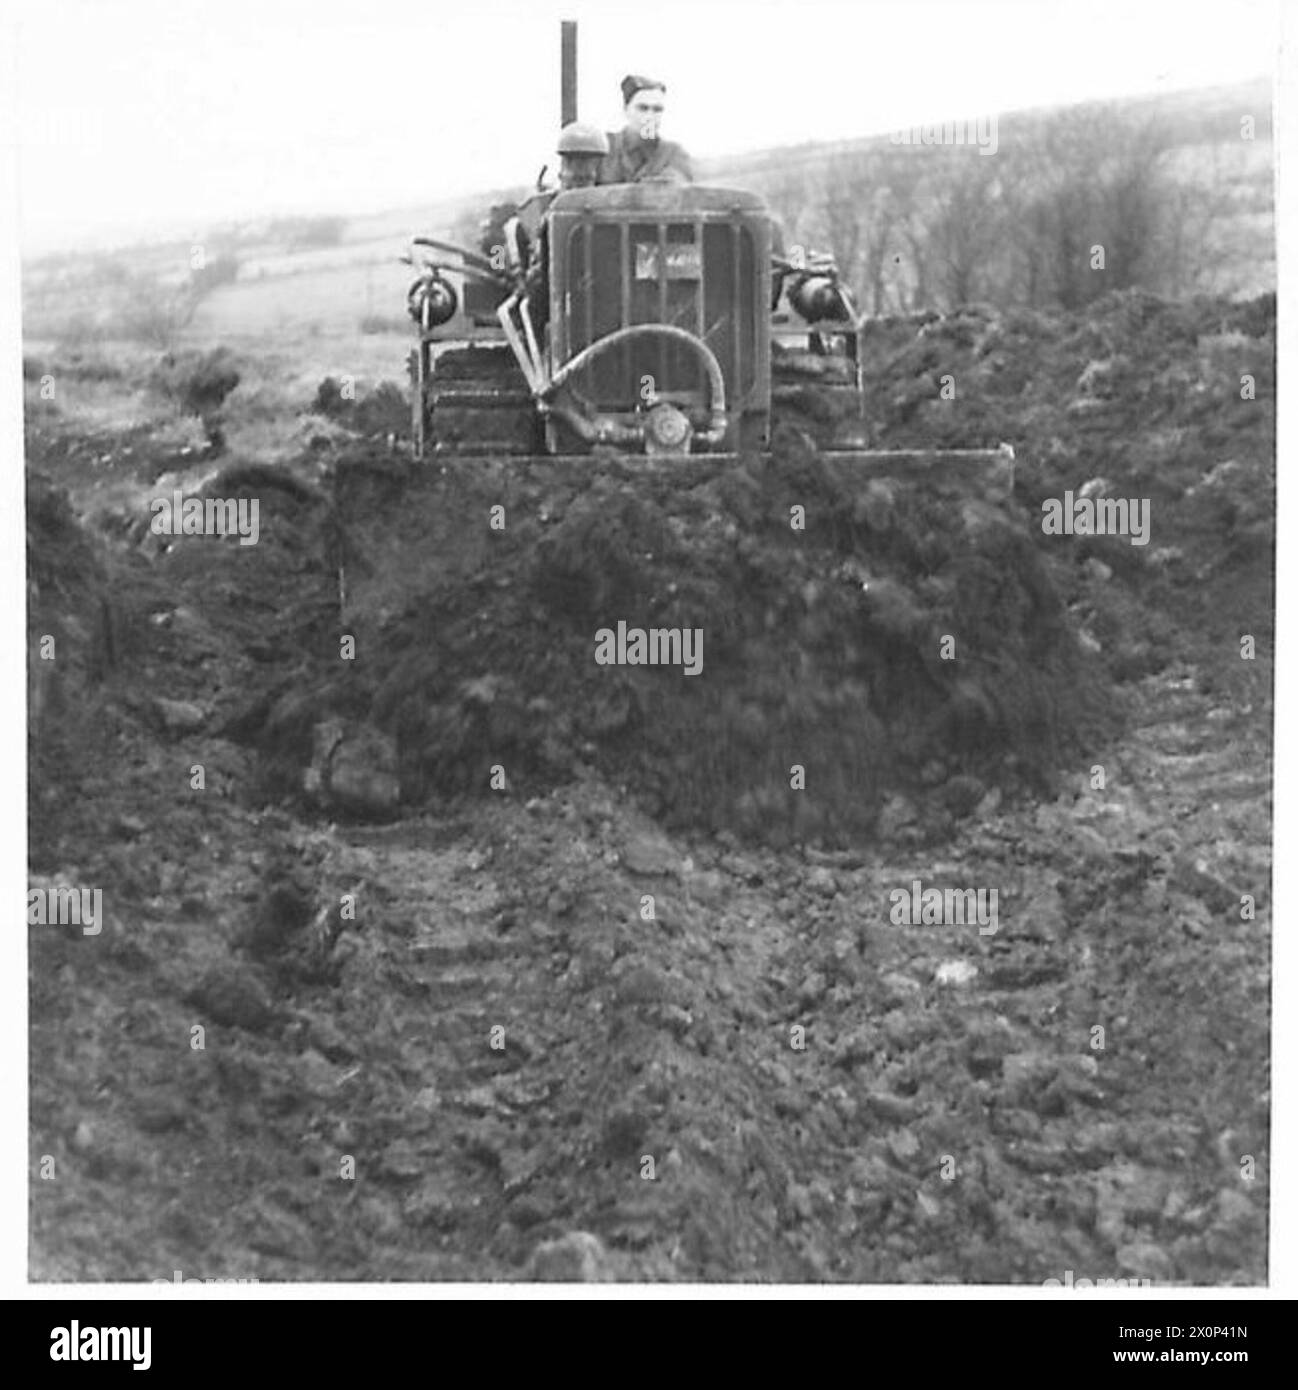 STEINBRUCHARBEITEN - ein amerikanischer Bulldozer, der die Erde von der Spitze des Felsens entfernt. Fotografisches negativ, britische Armee Stockfoto